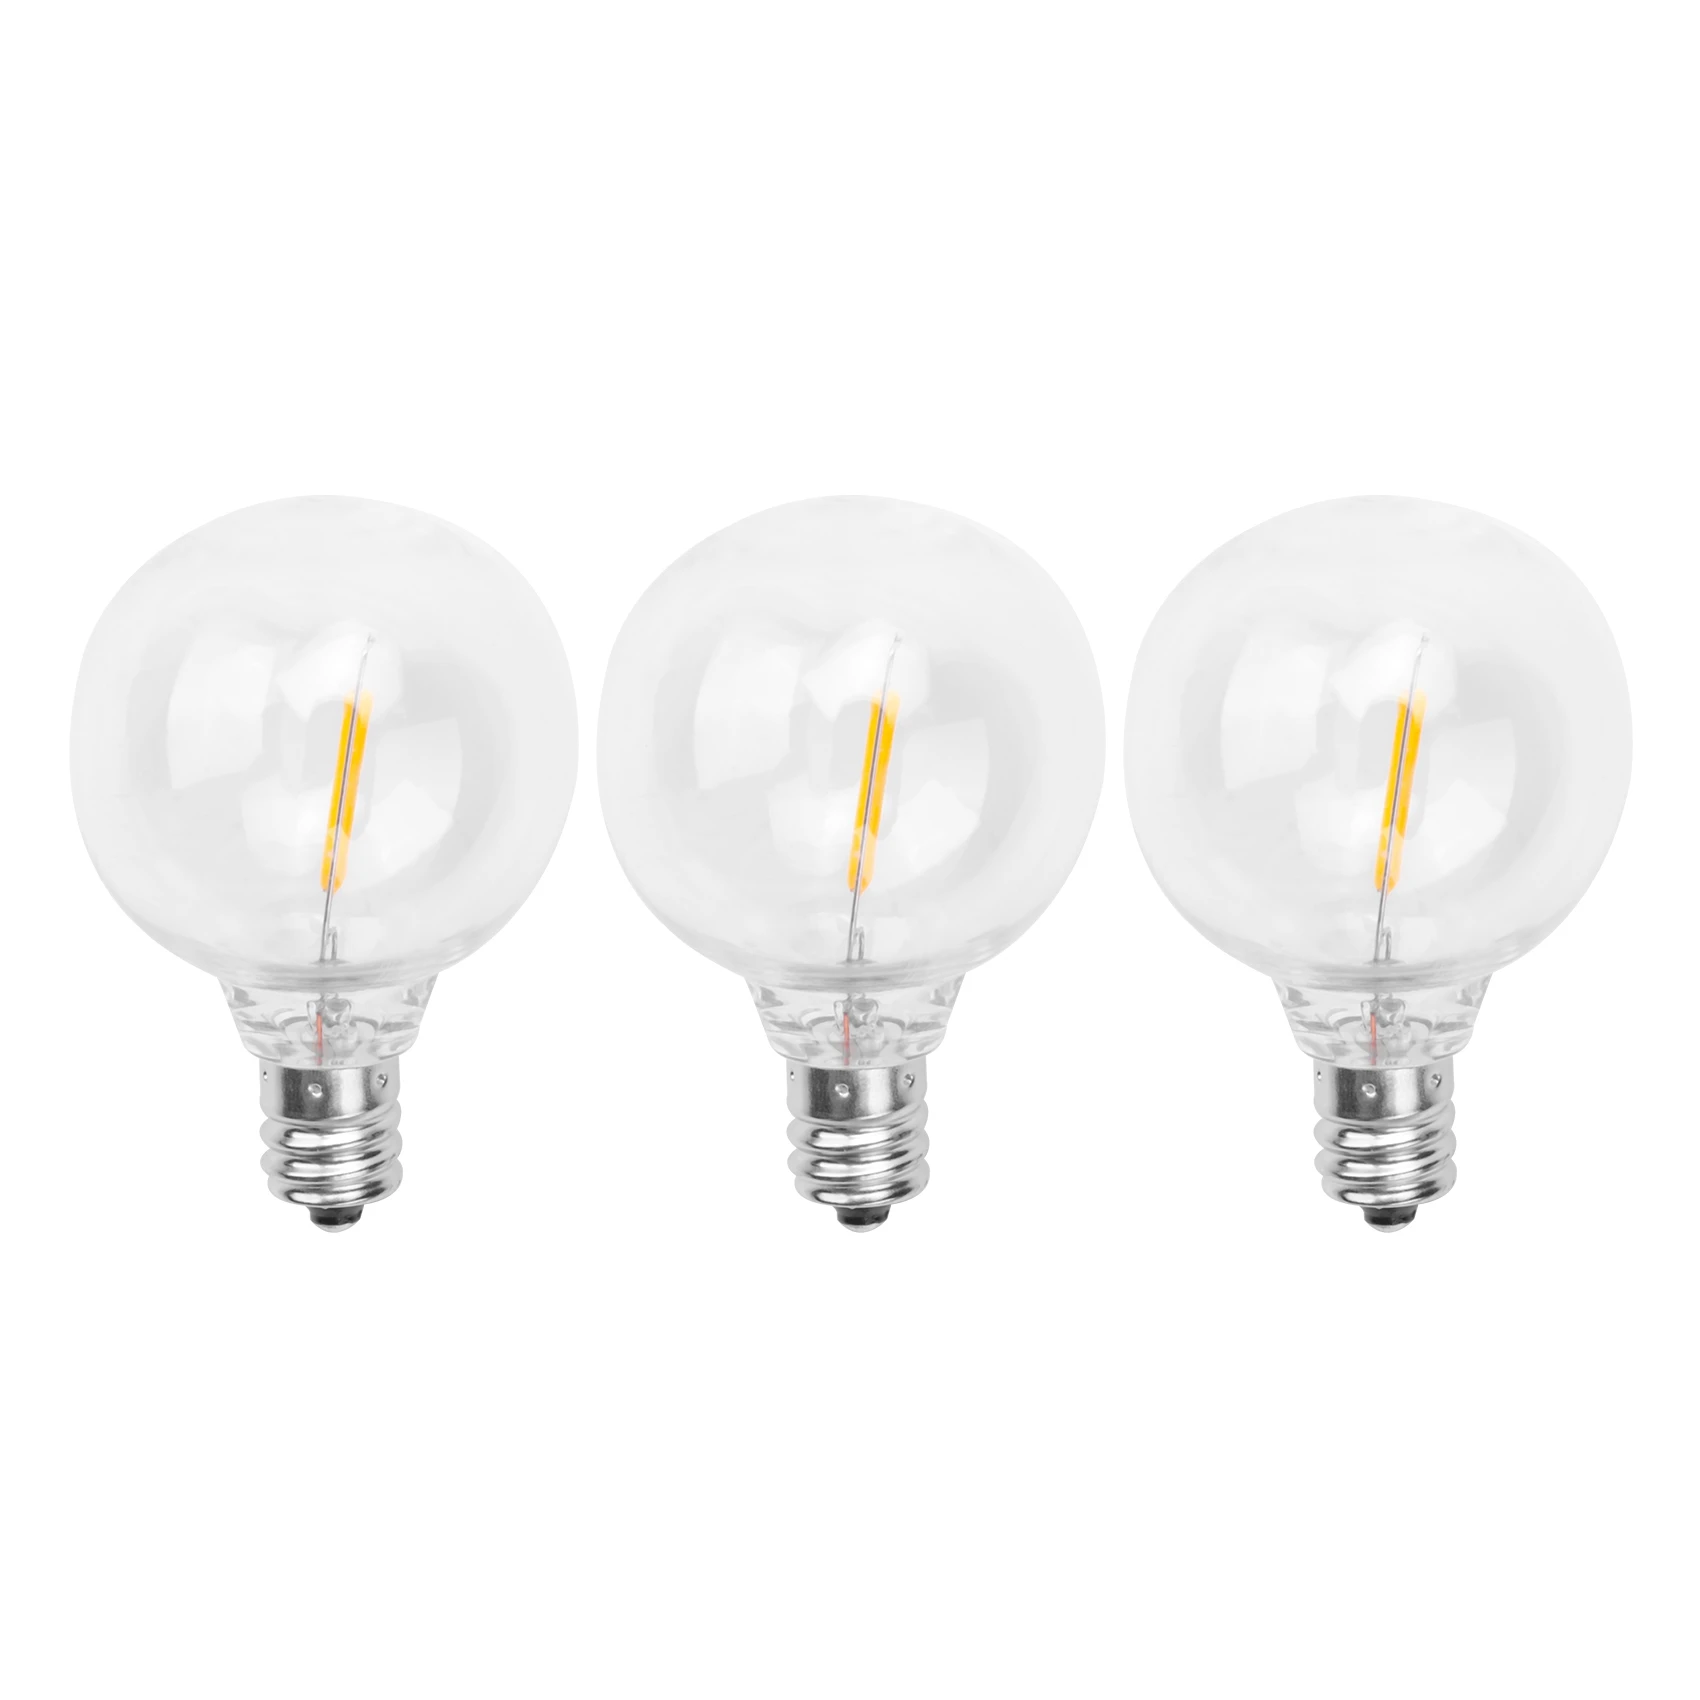 

3Pcs G40 Led Replacement Light Bulbs, E12 Screw Base Shatterproof LED Globe Bulbs for Solar String Lights Warm White